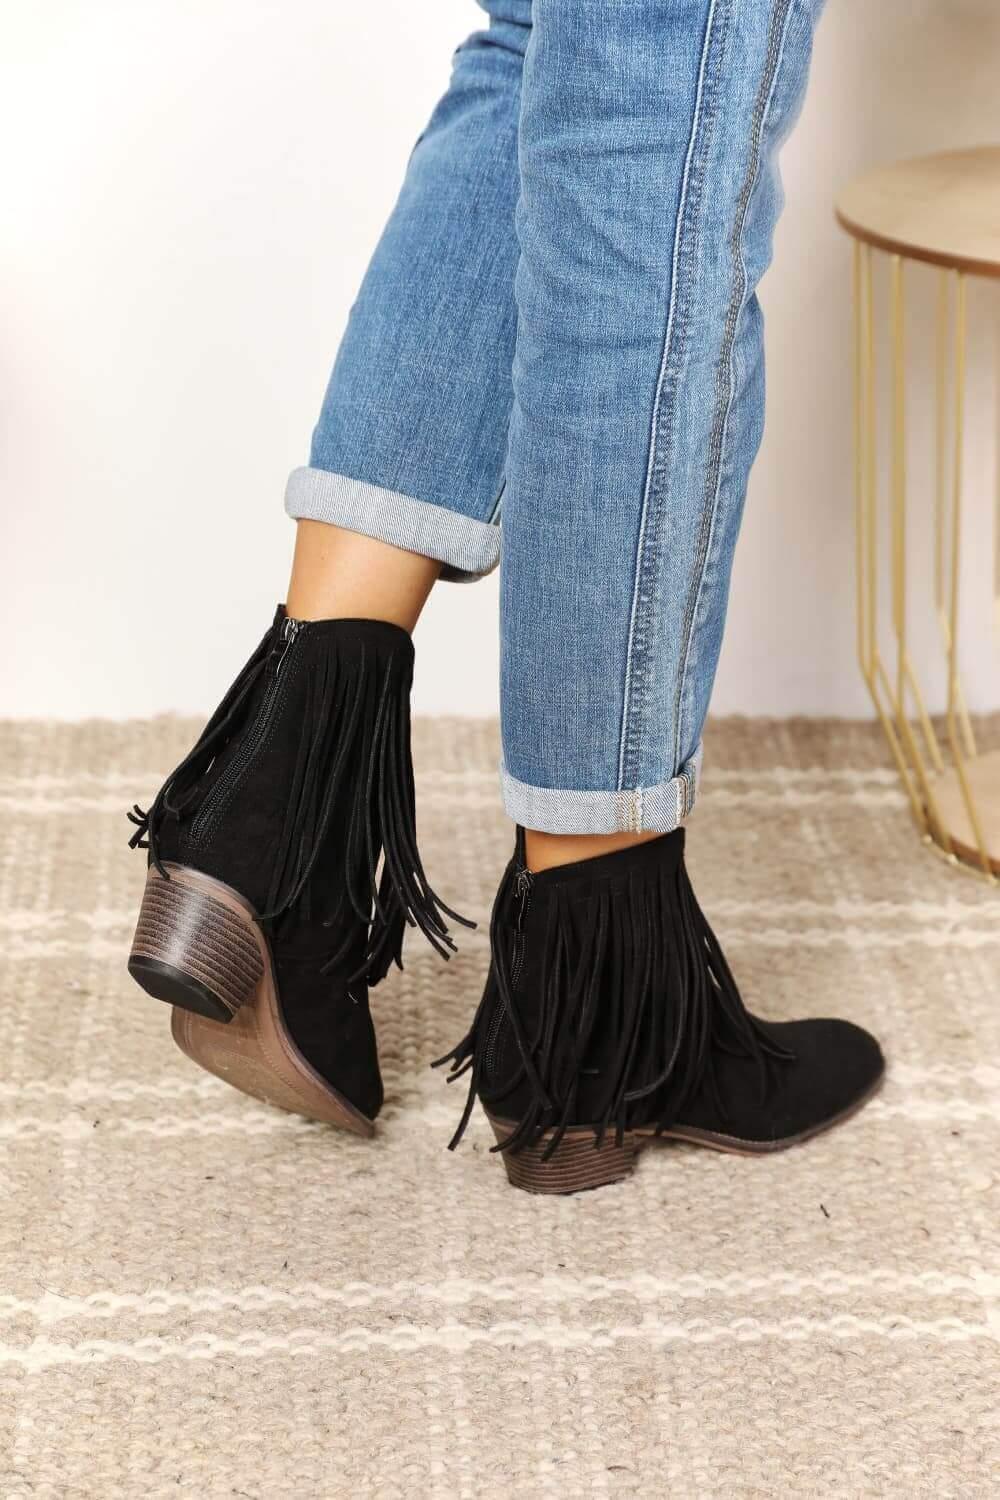 Legend Women's Fringe Cowboy Western Ankle Boots - Samslivos